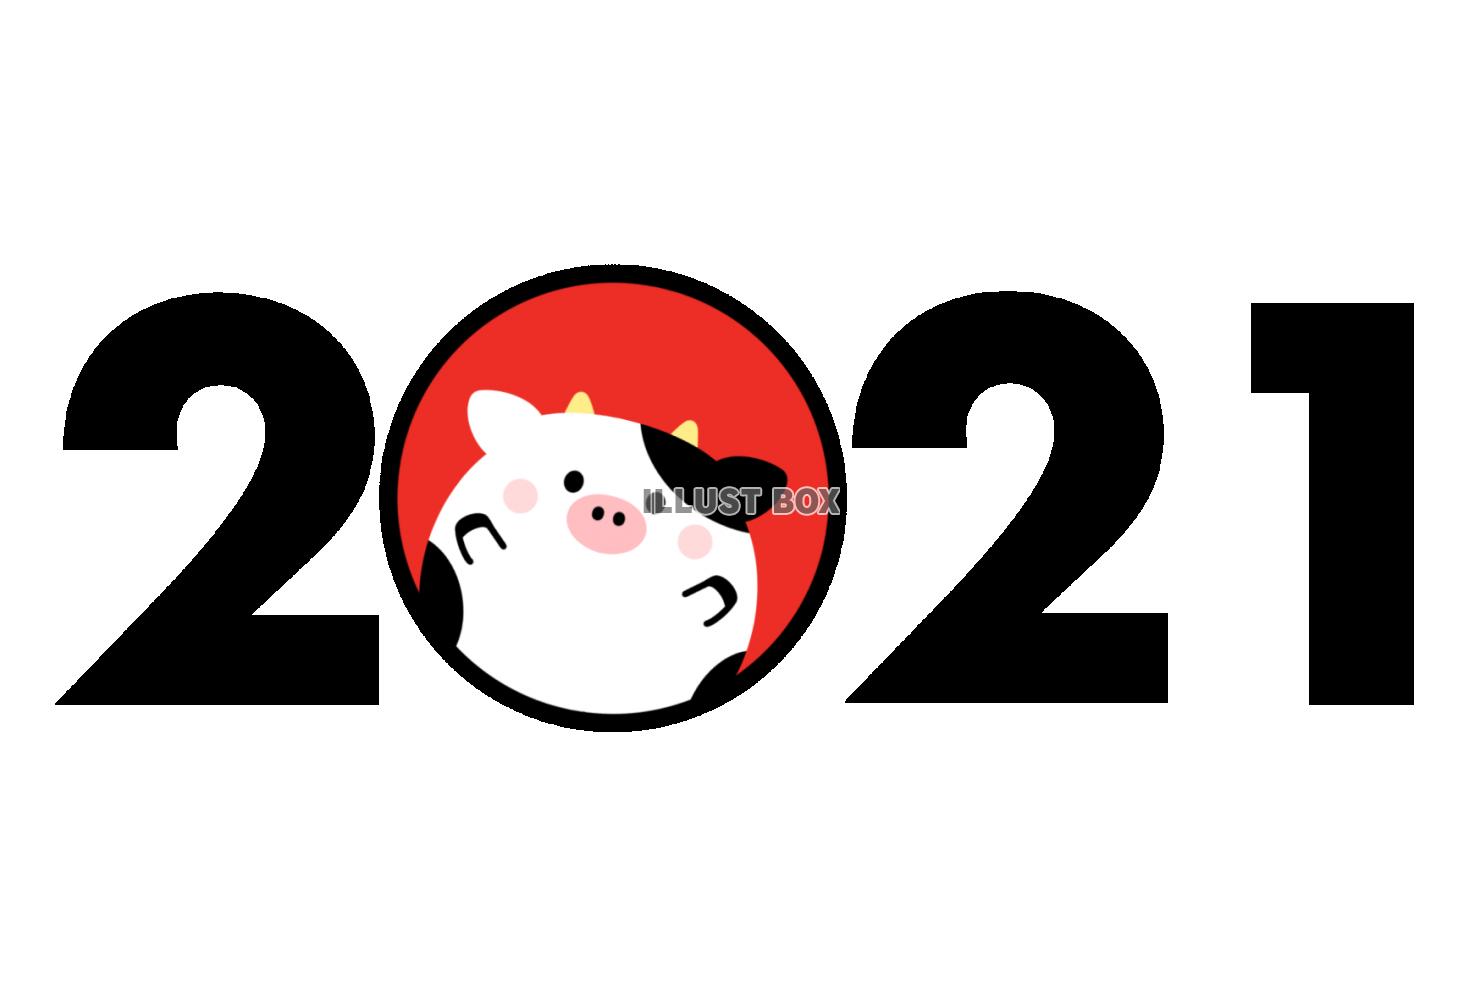 2021・牛